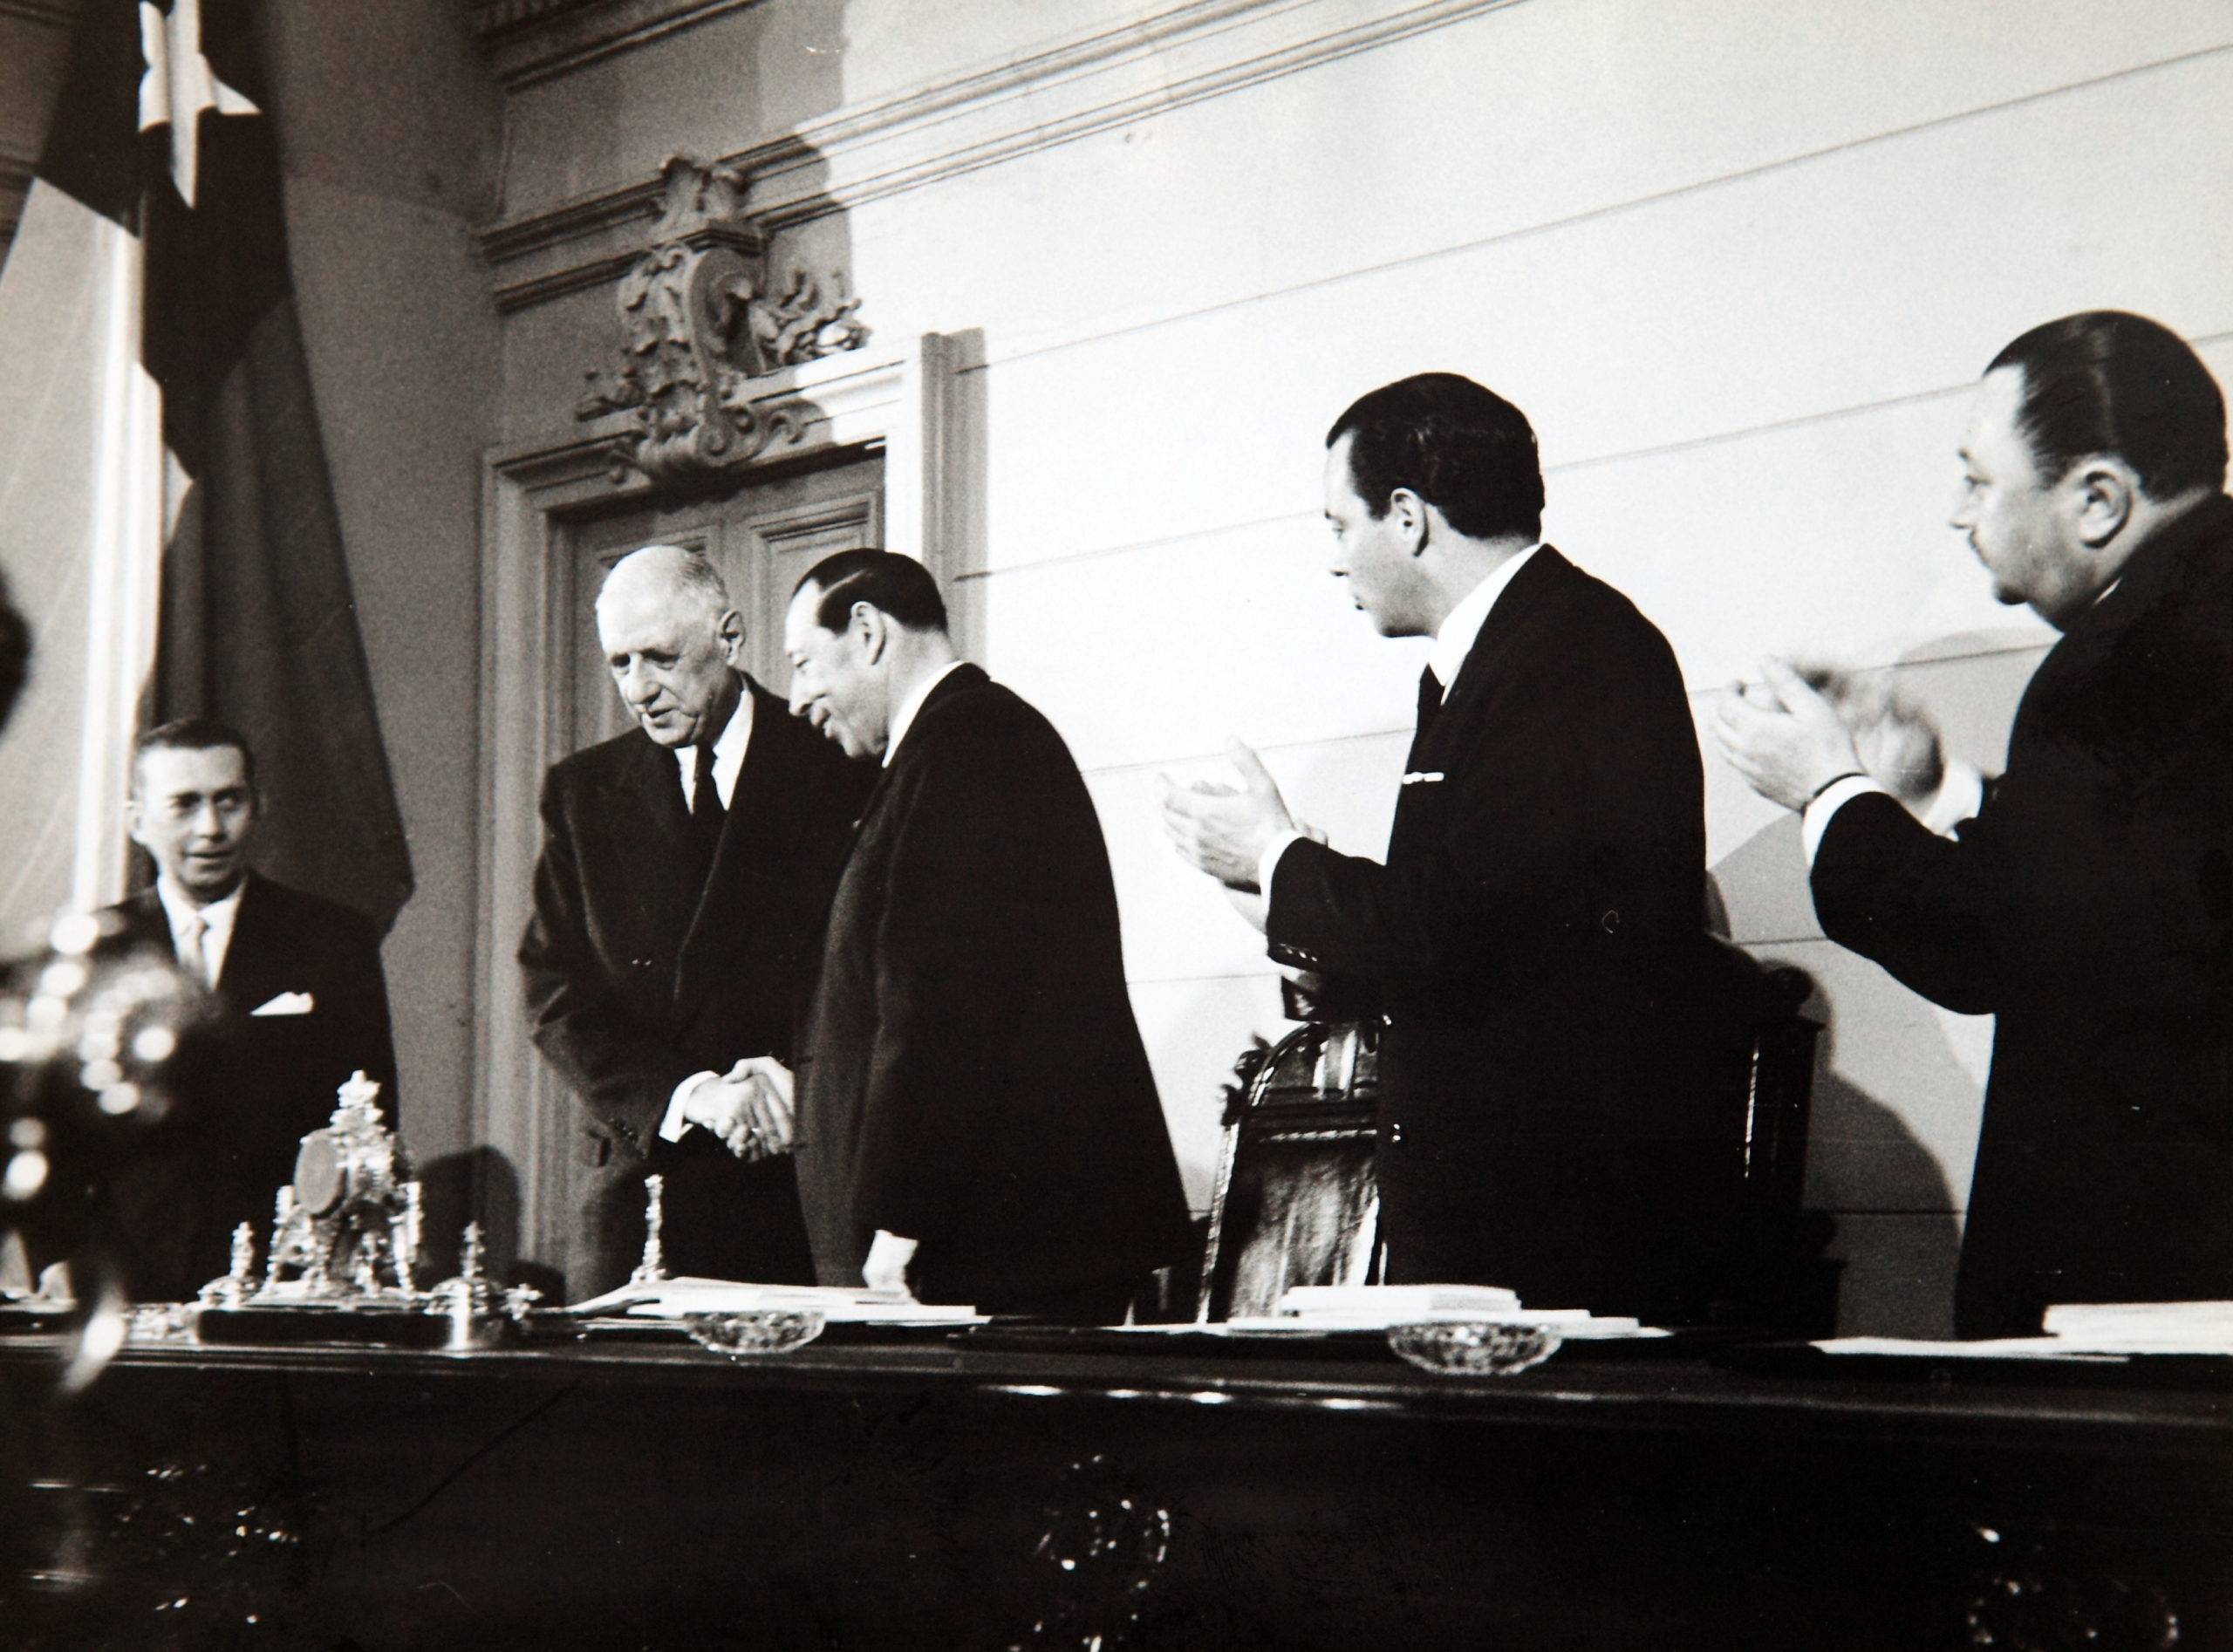 Visite officielle de Charles de Gaulle au Congrès National du Chili (septembre de 1964). Crédits : Biblioteca del Congreso Nacional